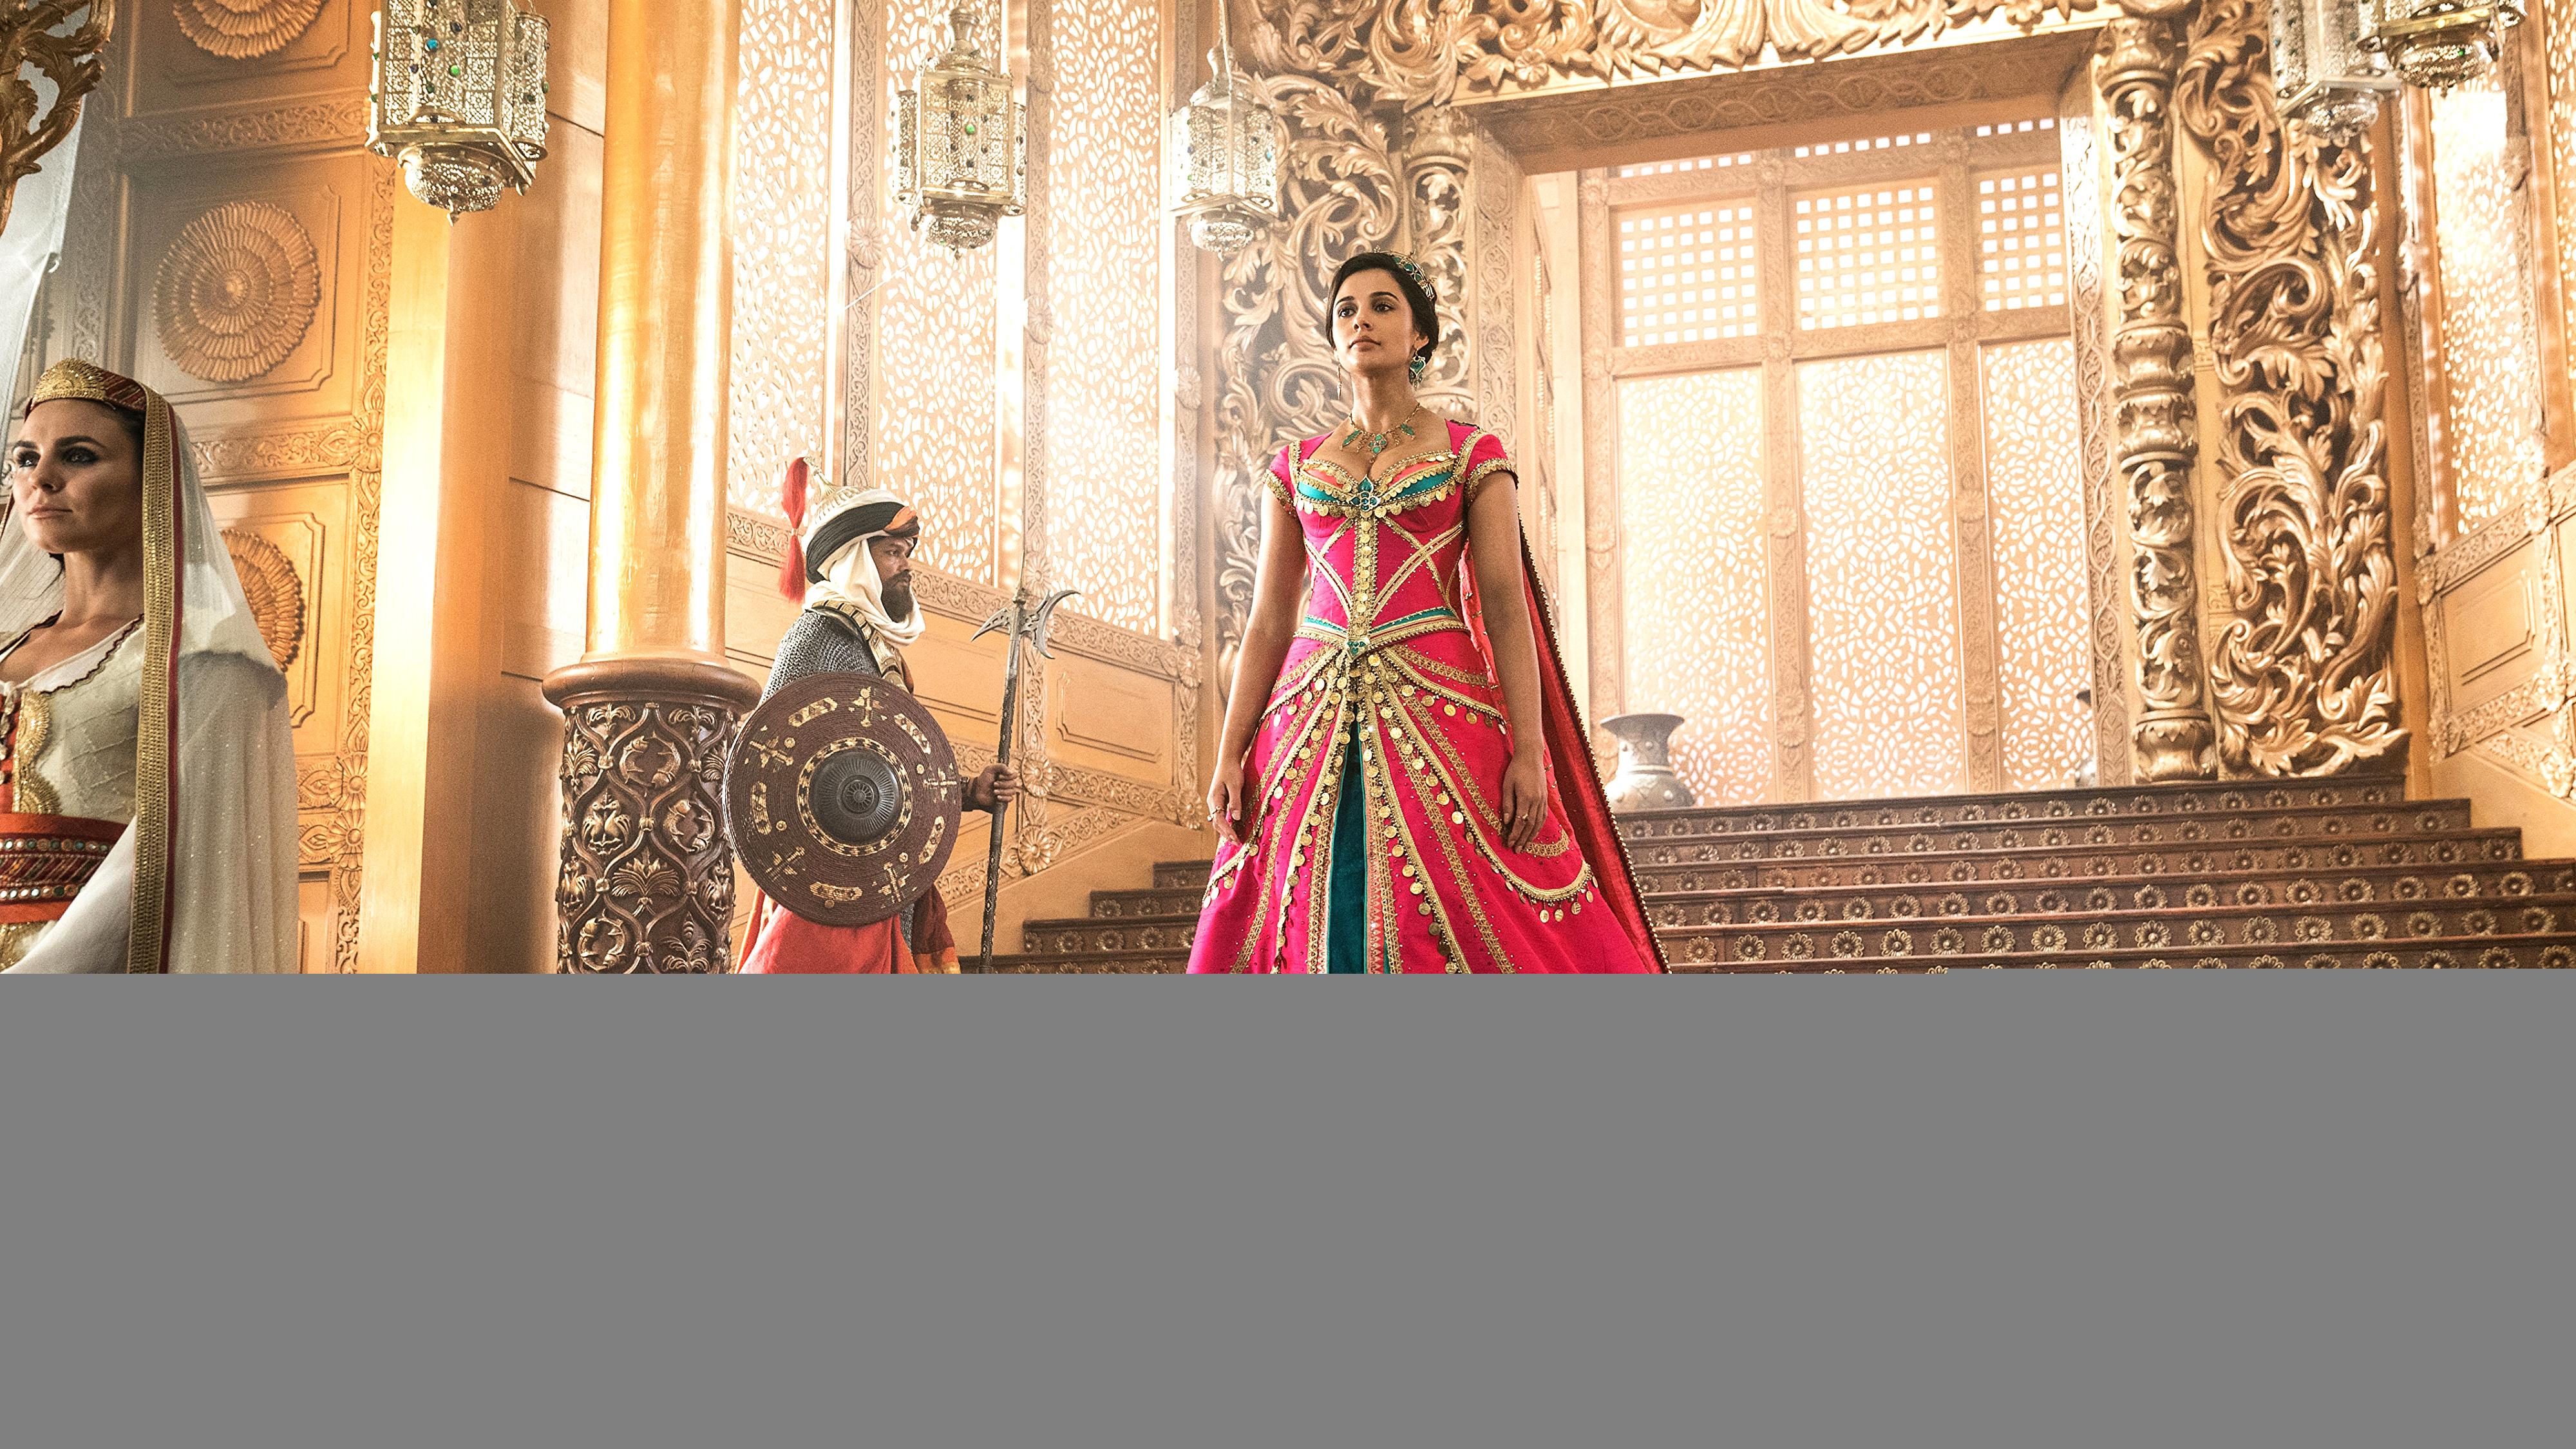 Naomi Scott as Princess Jasmine in Aladdin 2019 4K Wallpaper. HD